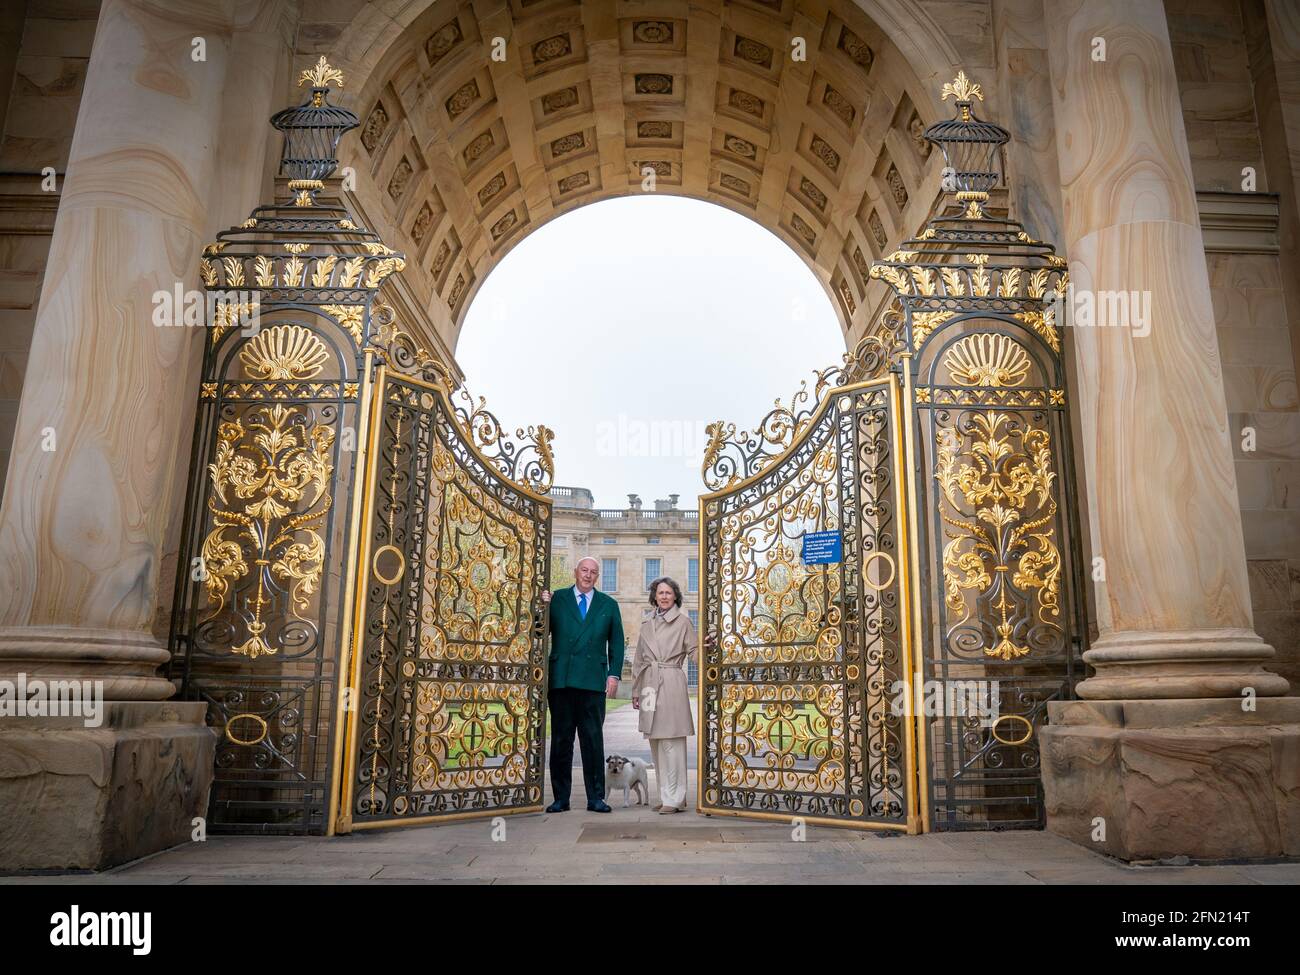 Der Herzog und die Herzogin von Devonshire öffnen die Tore zum Chatsworth House in Bakewell, Derbyshire. Das Herrenhaus bereitet sich darauf vor, nach der weiteren Lockerung der Sperrbeschränkungen am Dienstag, dem 18. Mai, die Öffentlichkeit wieder zu öffnen. Bilddatum: Donnerstag, 13. Mai 2021. Stockfoto